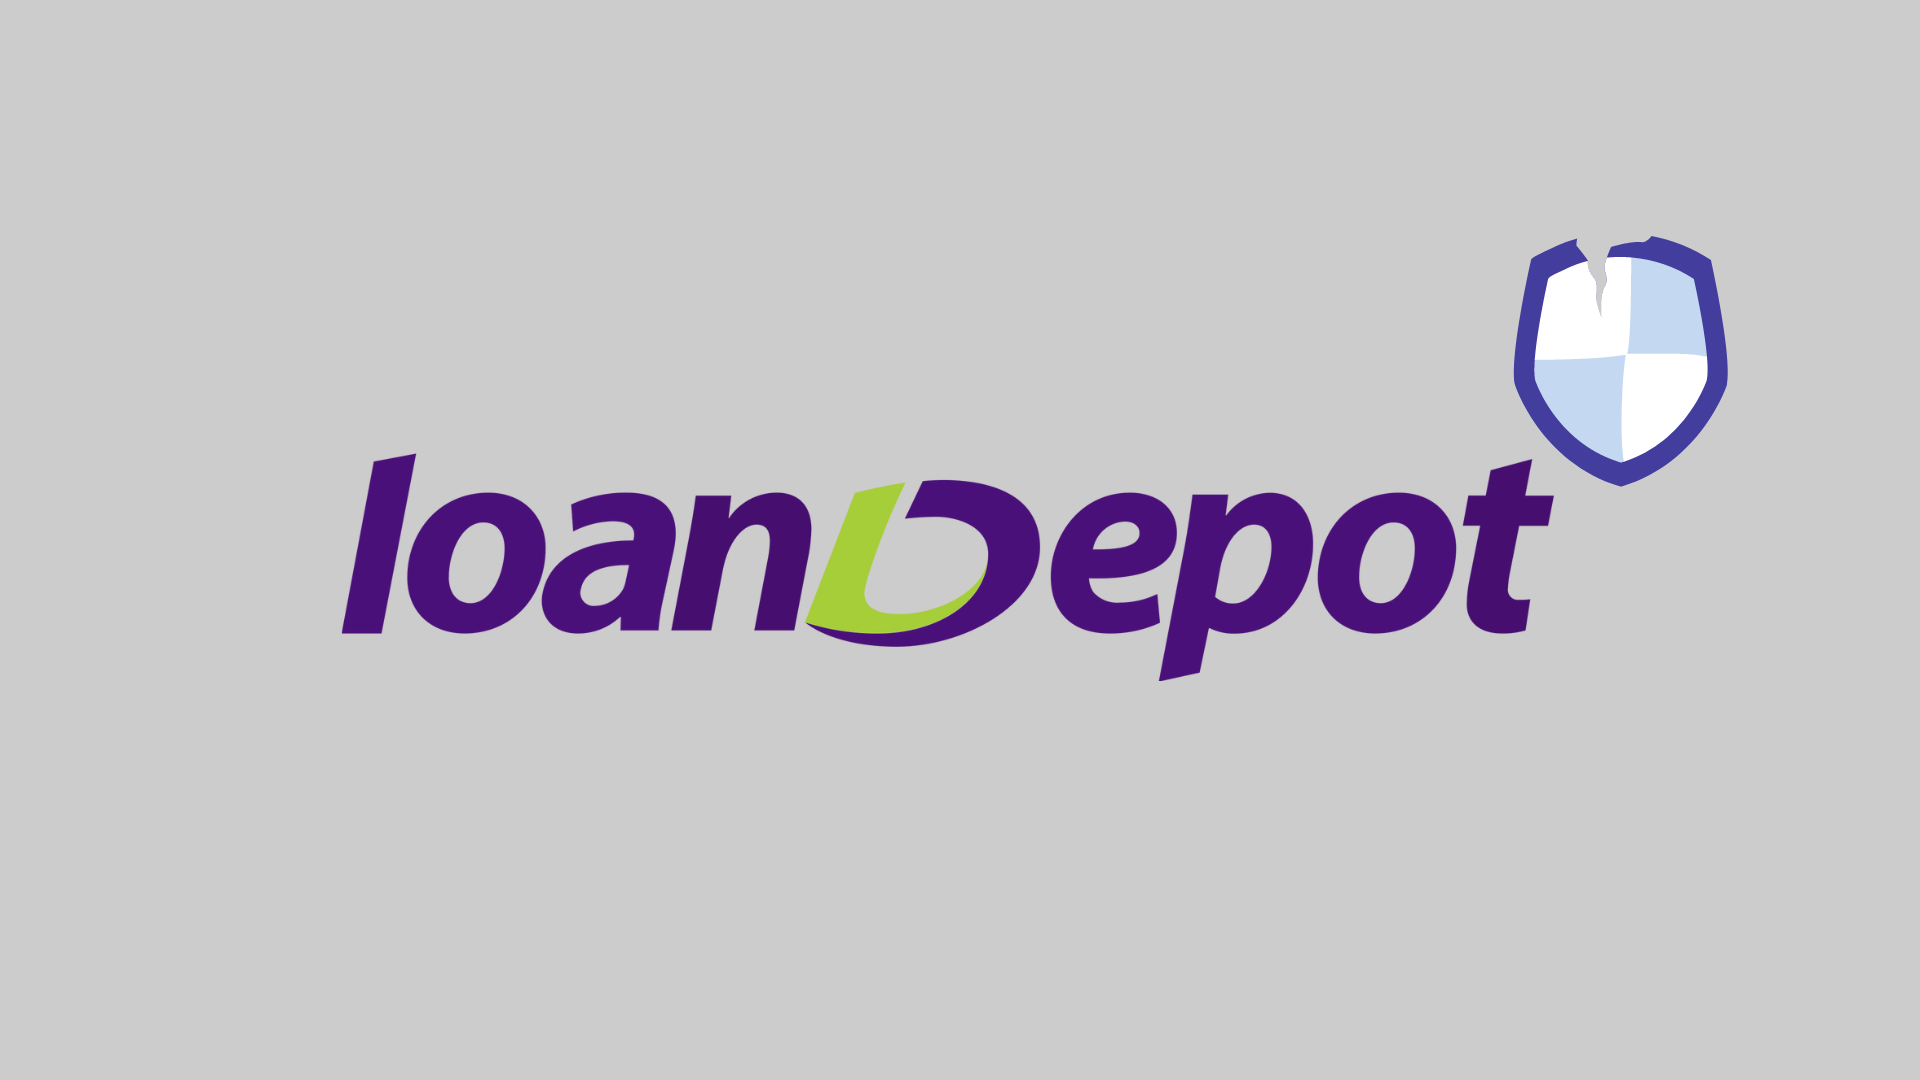 Ciberataque a LoanDepot afecta a 16.6M de usuarios